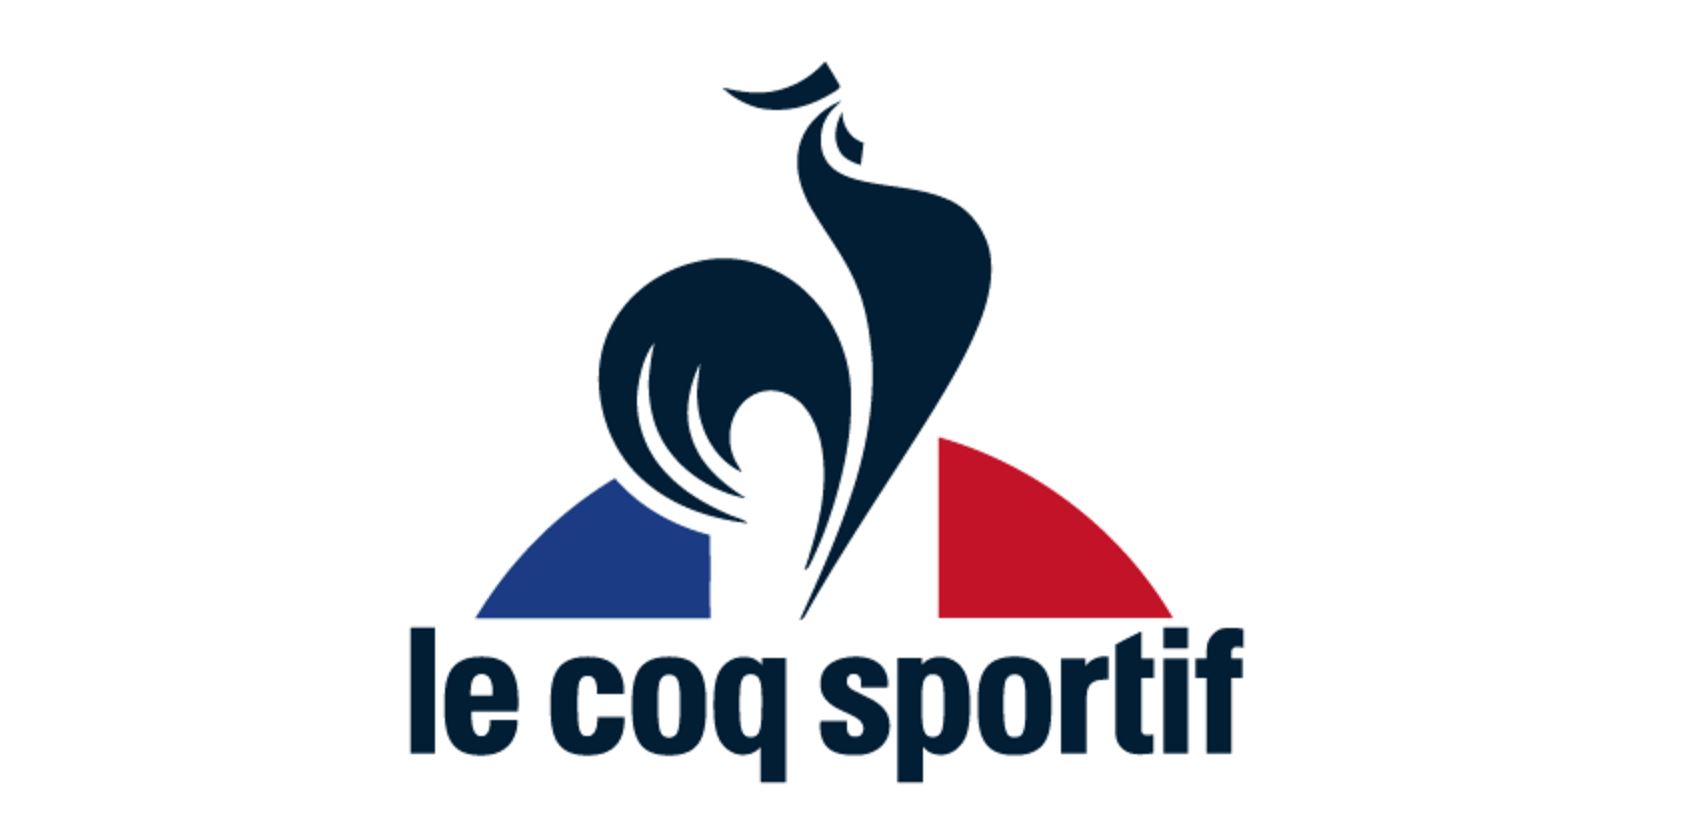 Le Coq Sportif Logo Significado Del Logotipo, Png, Vector | vlr.eng.br